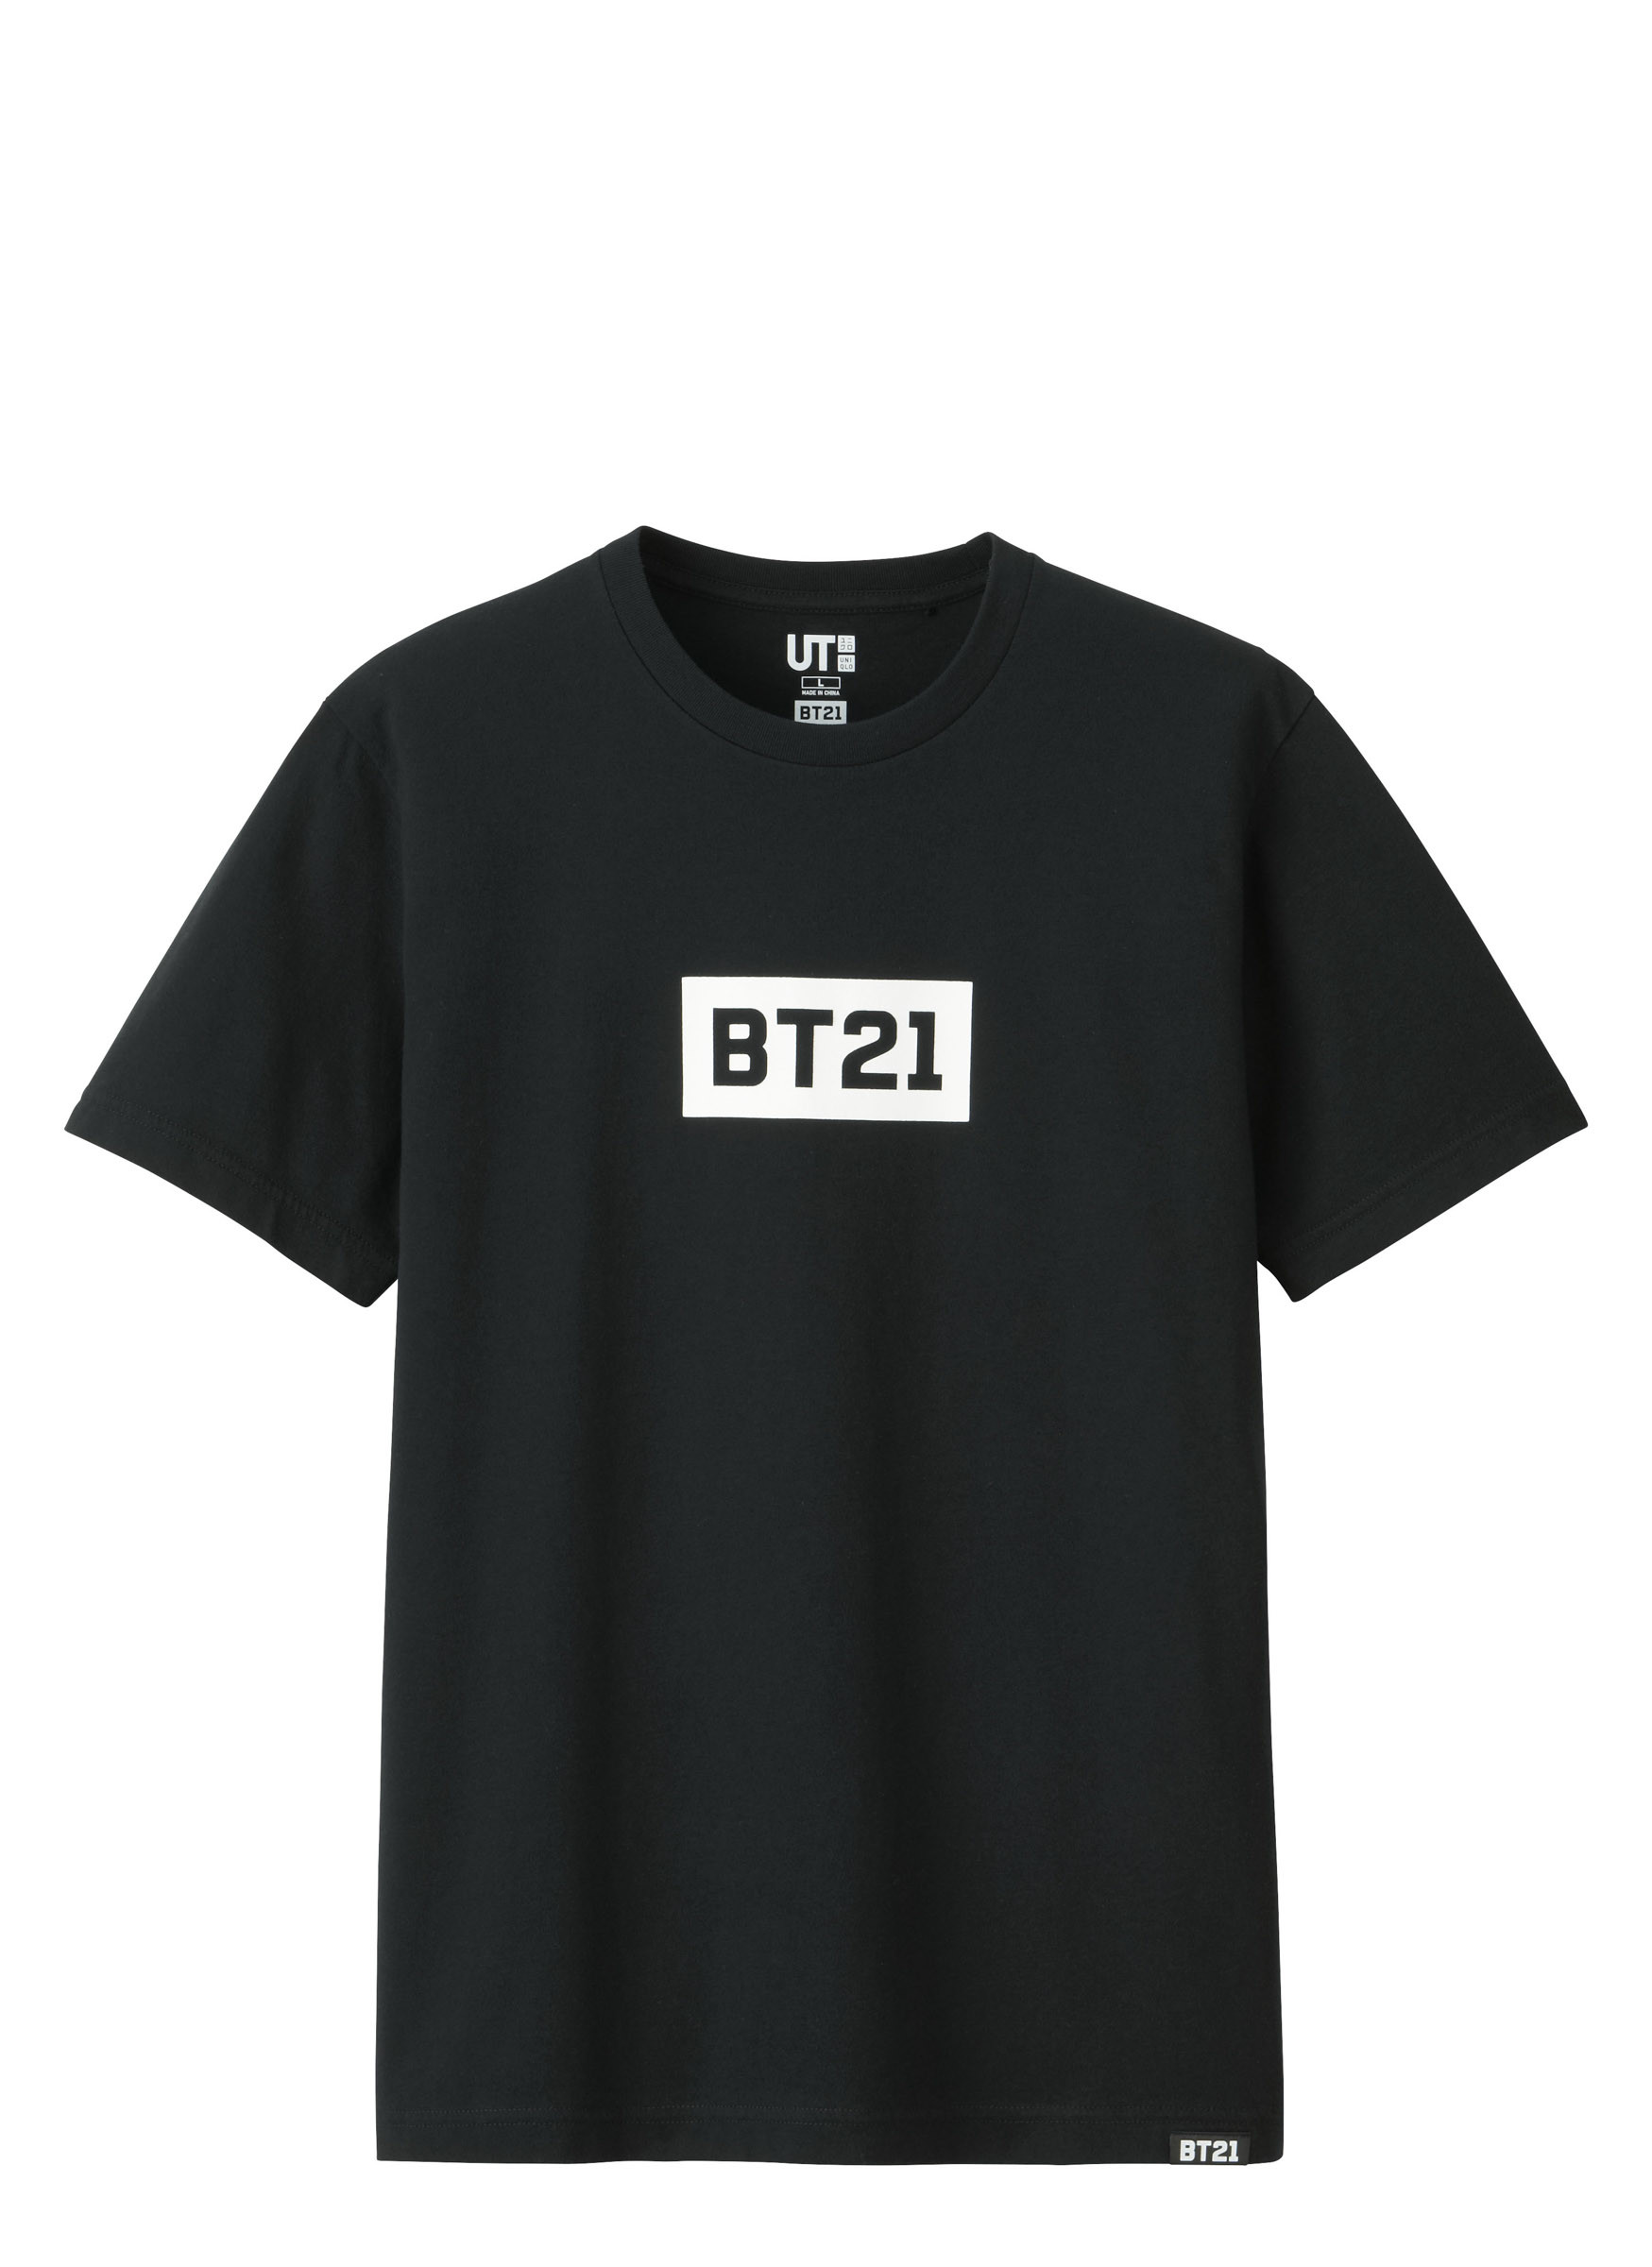 ユニクロ「UT」がBT21とコラボ、各キャラクターのデザインTシャツを発売